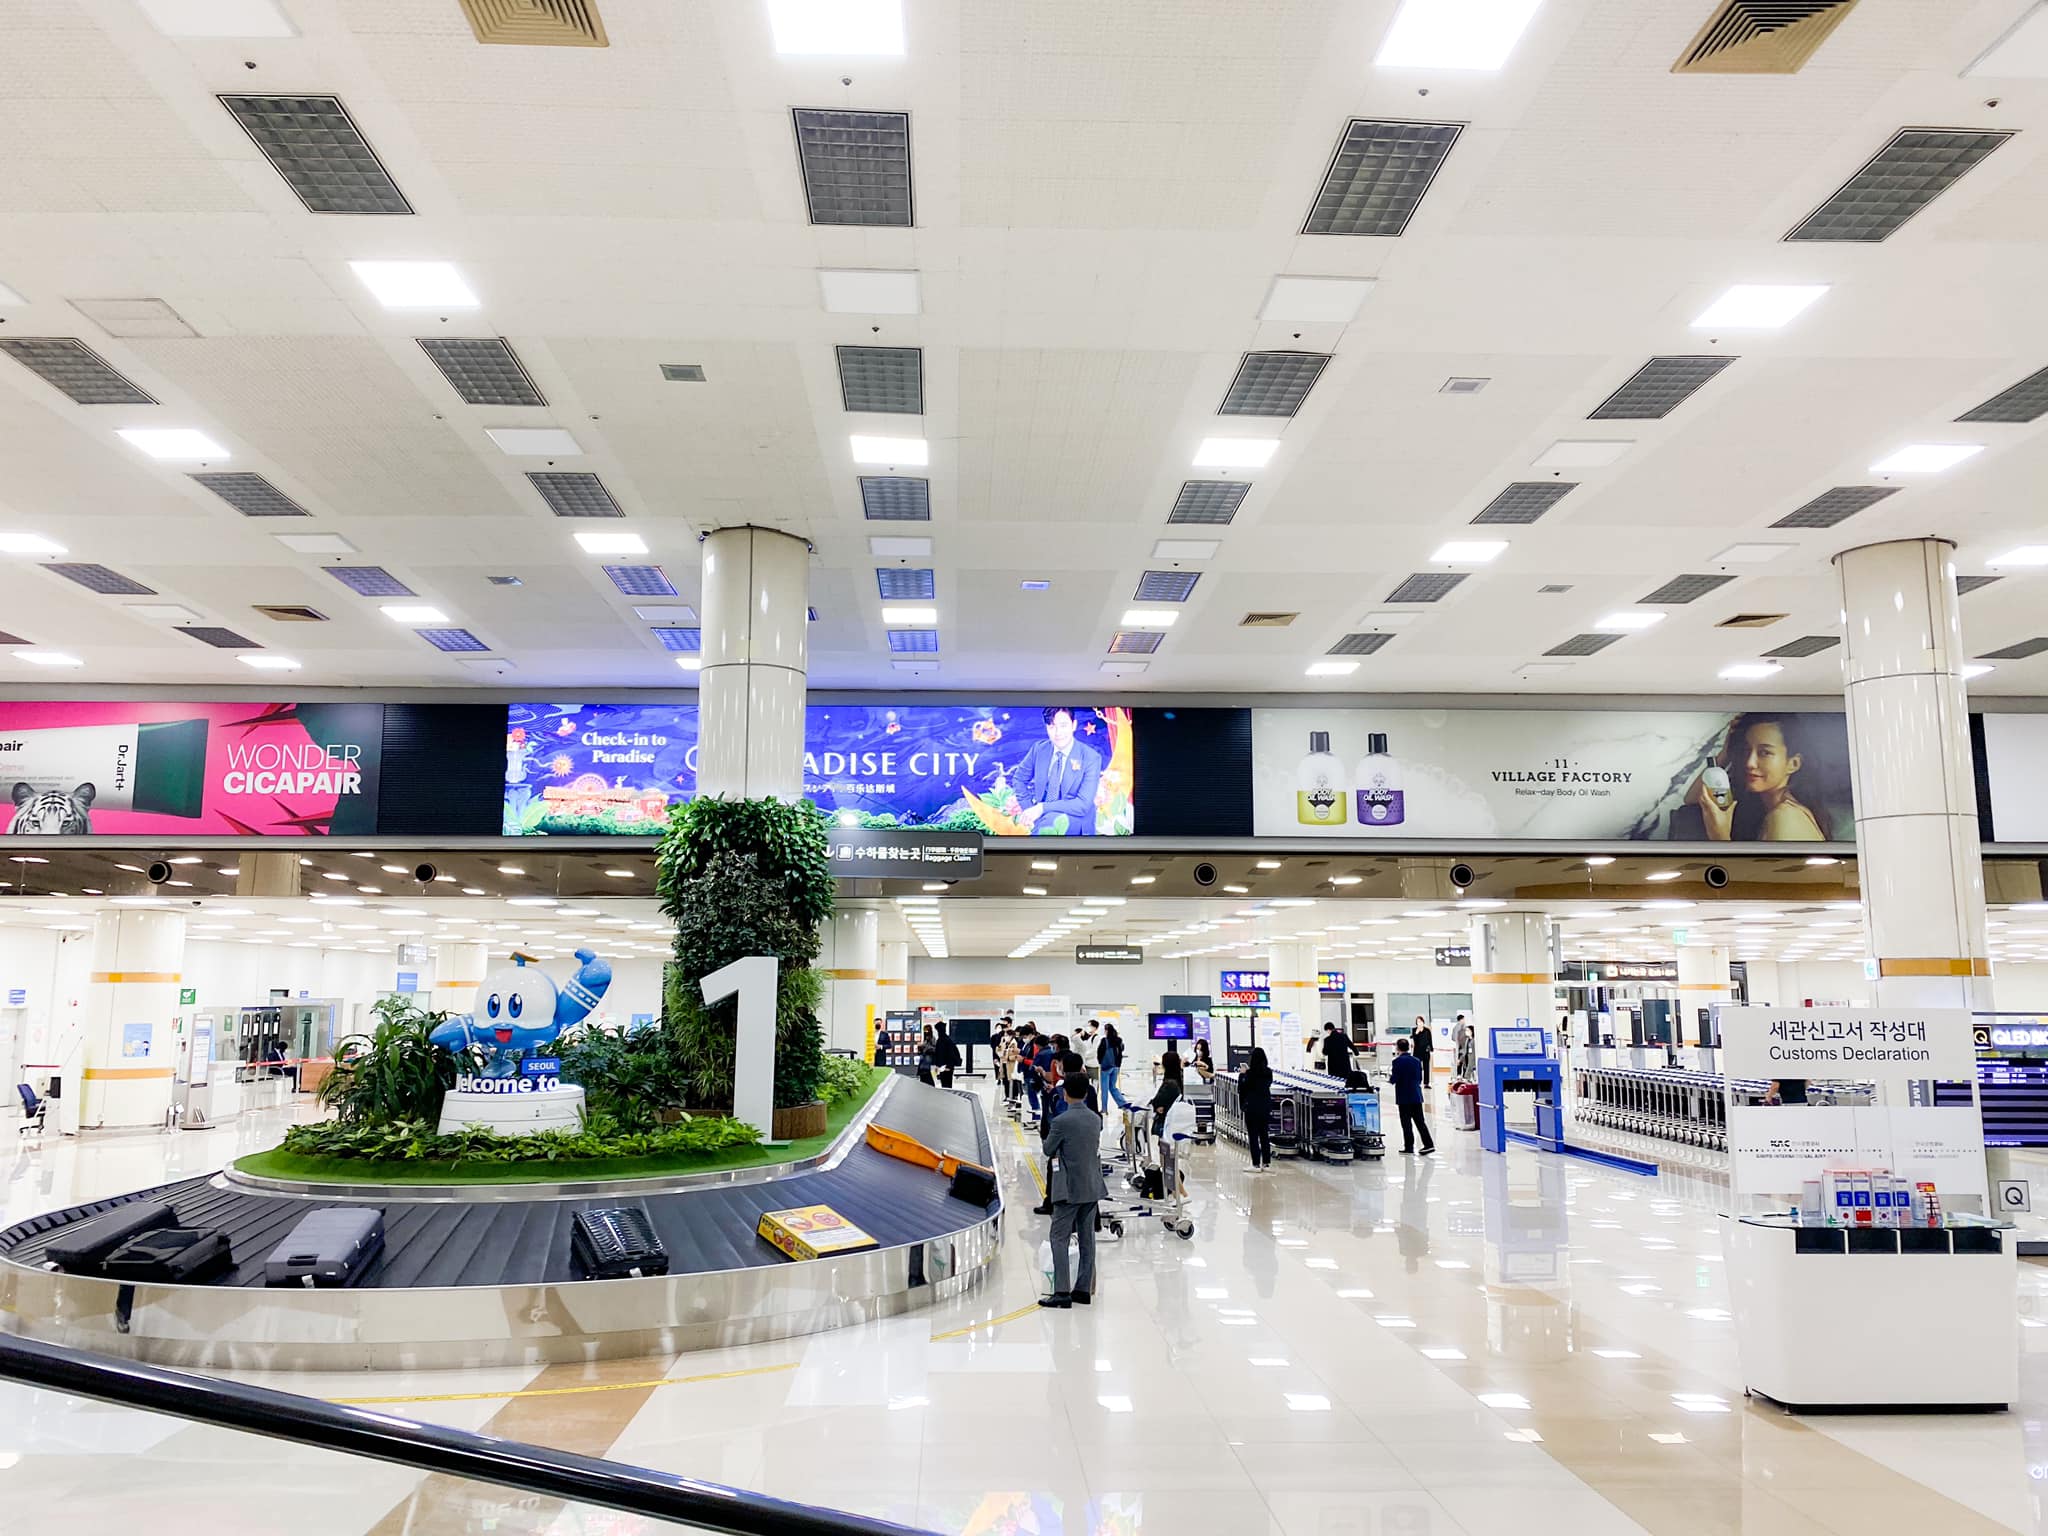 【2023金浦機場攻略】金浦國際機場到首爾市區交通、出入境、退稅教學、N26夜間巴士/公車 @GINA環球旅行生活